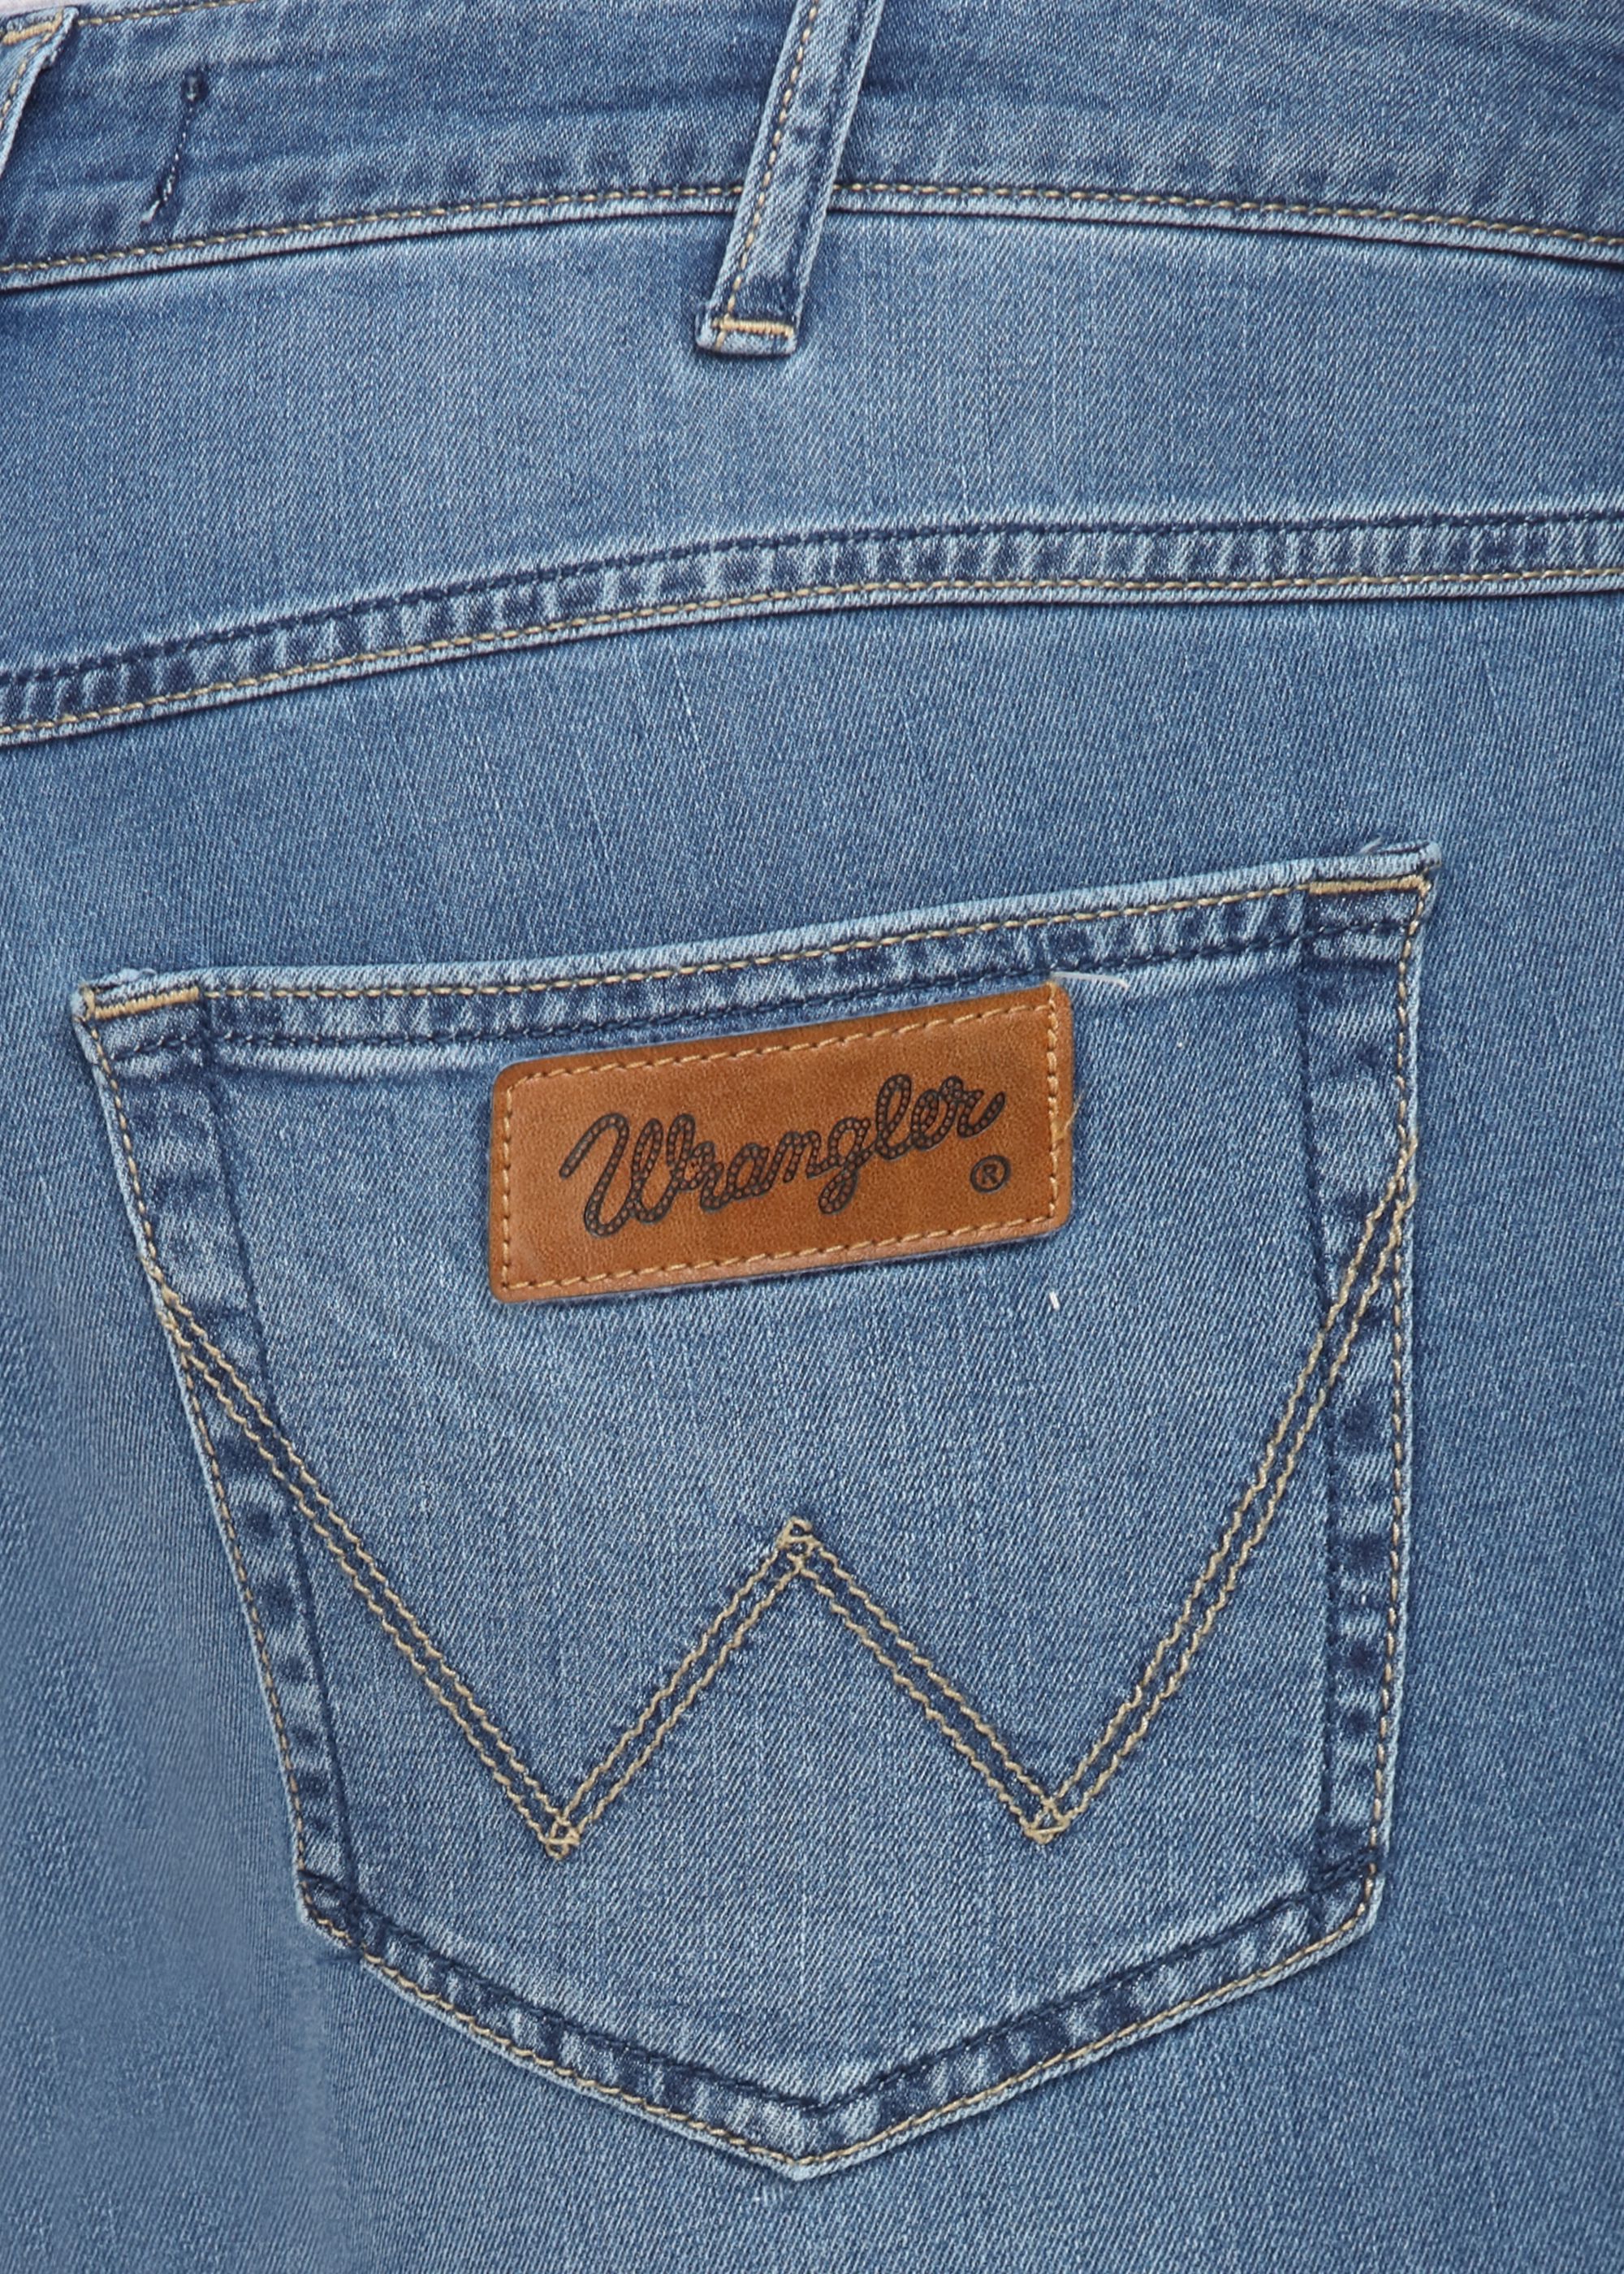 Wrangler Blue Slim Jeans - Buy Wrangler Blue Slim Jeans Online at Best ...